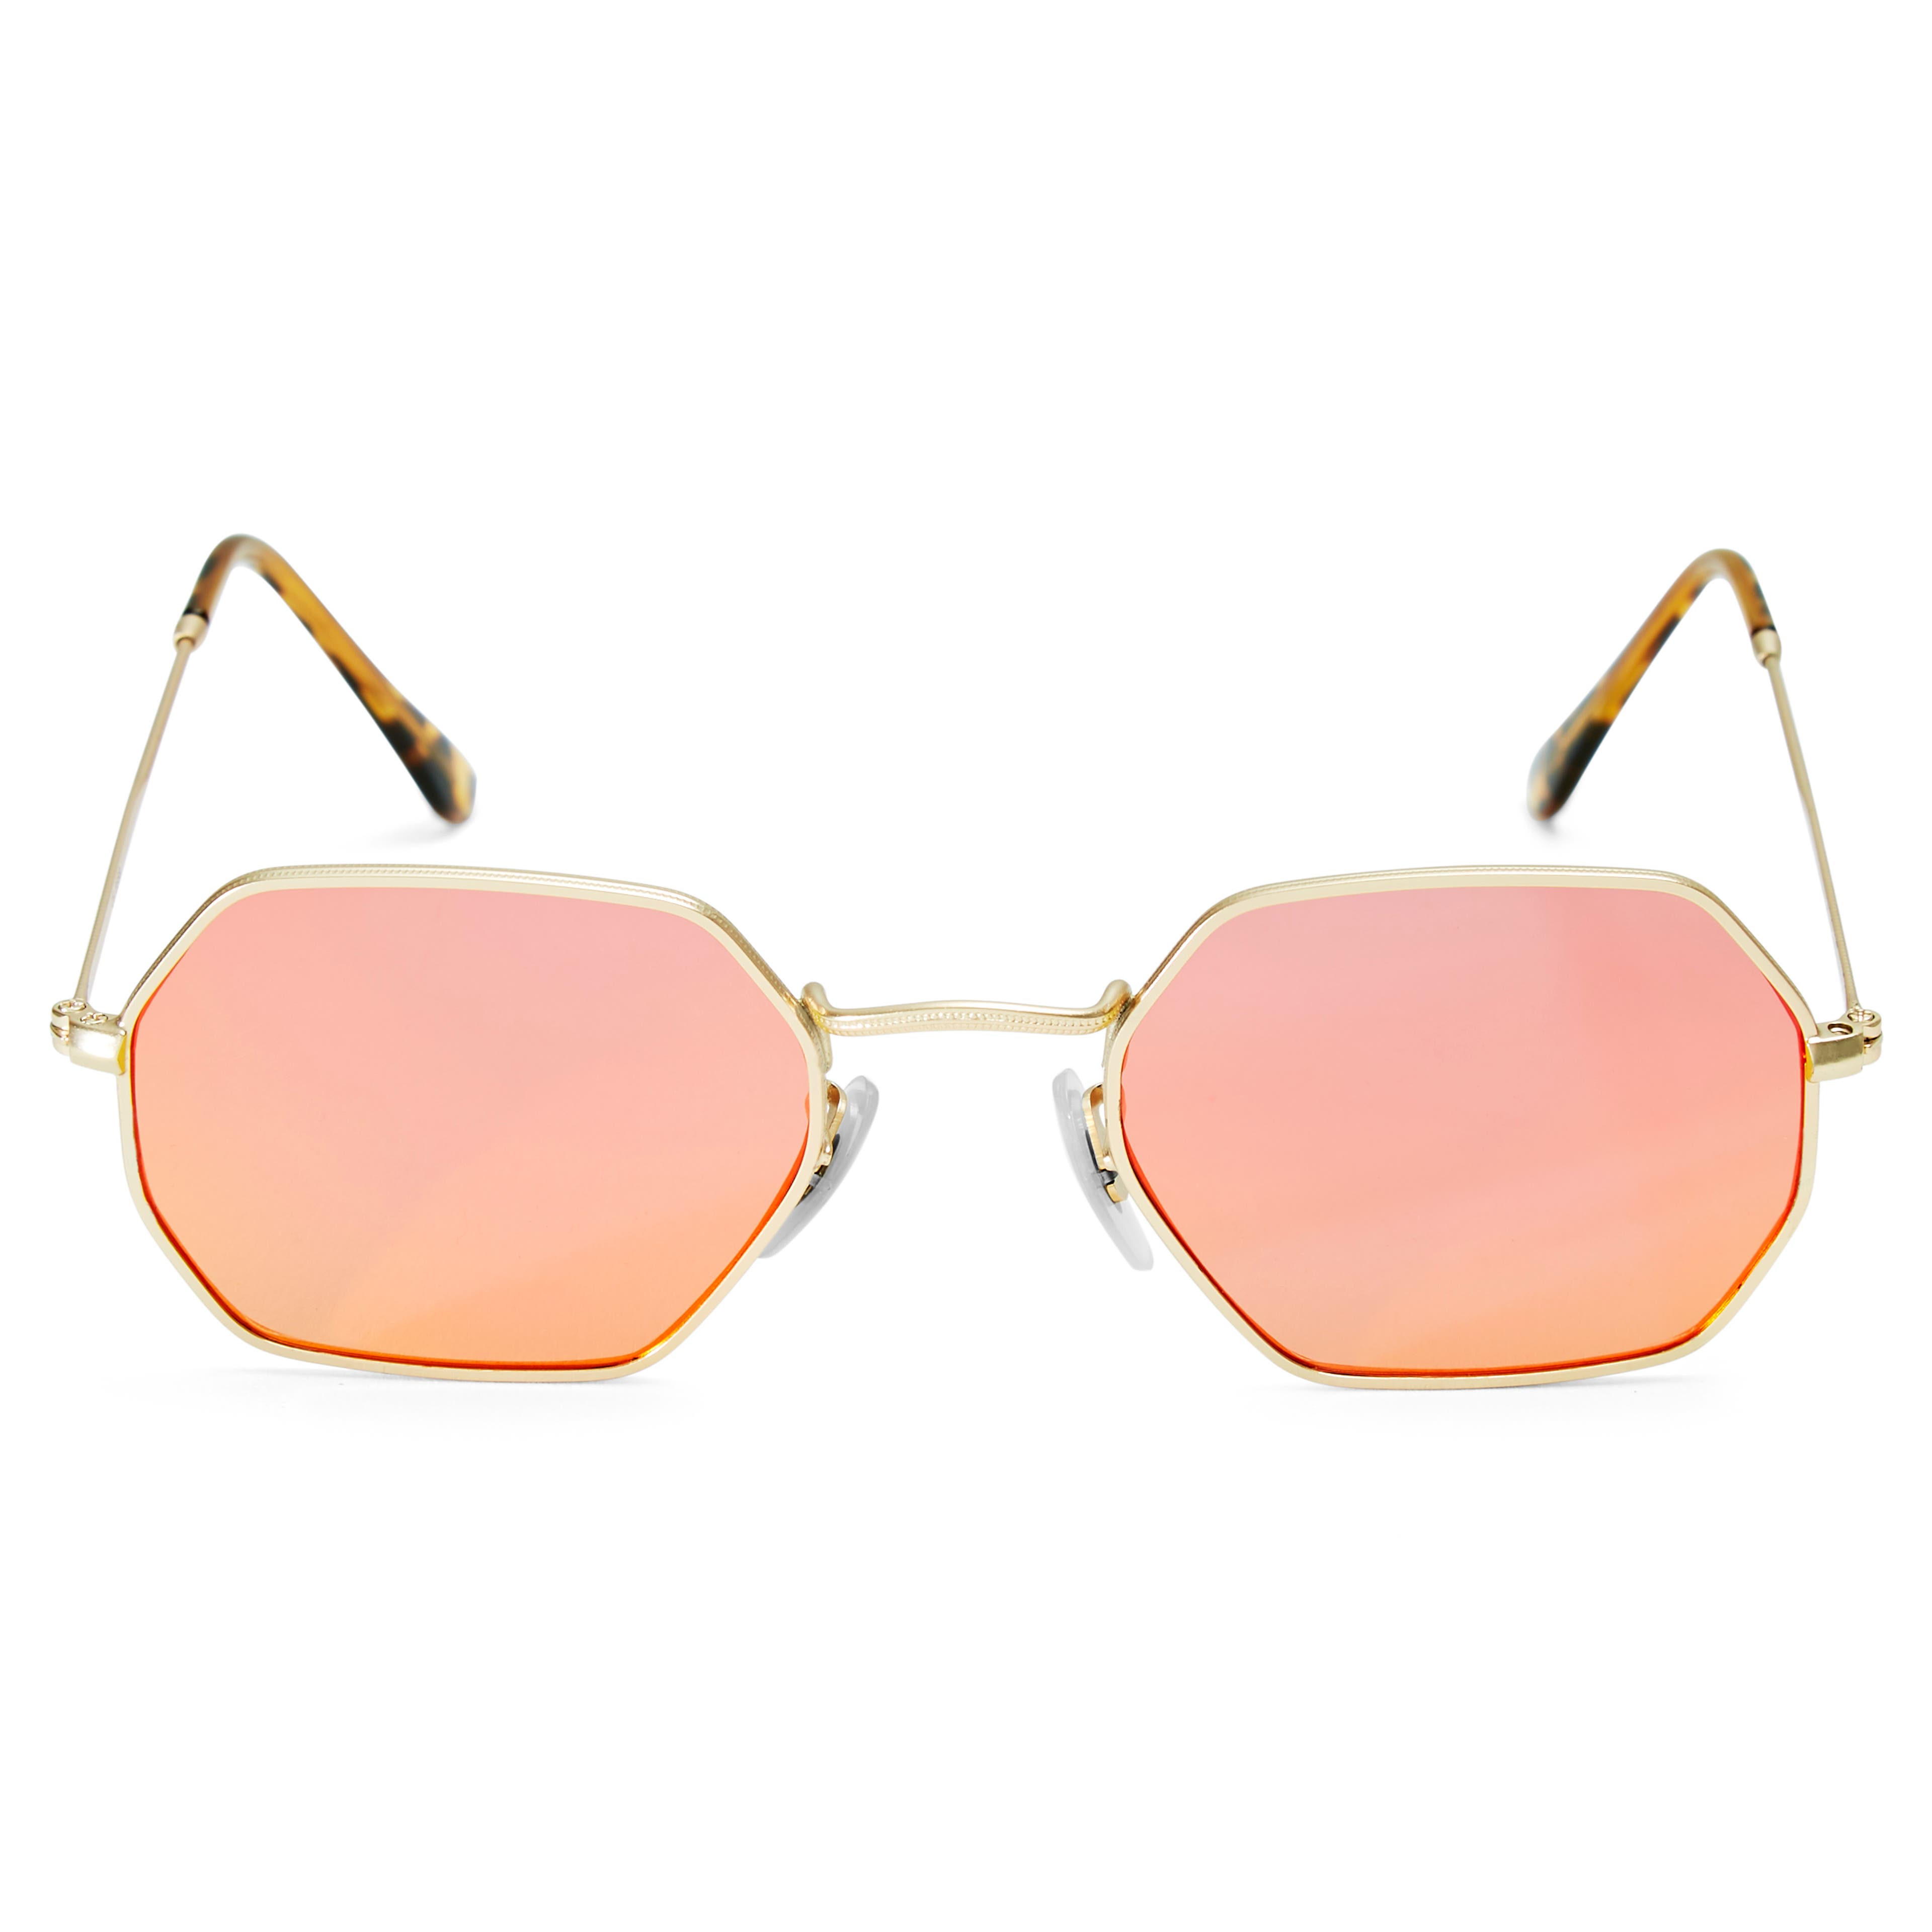 Modne okulary przeciwsłoneczne w złoto-pomarańczowym tonie